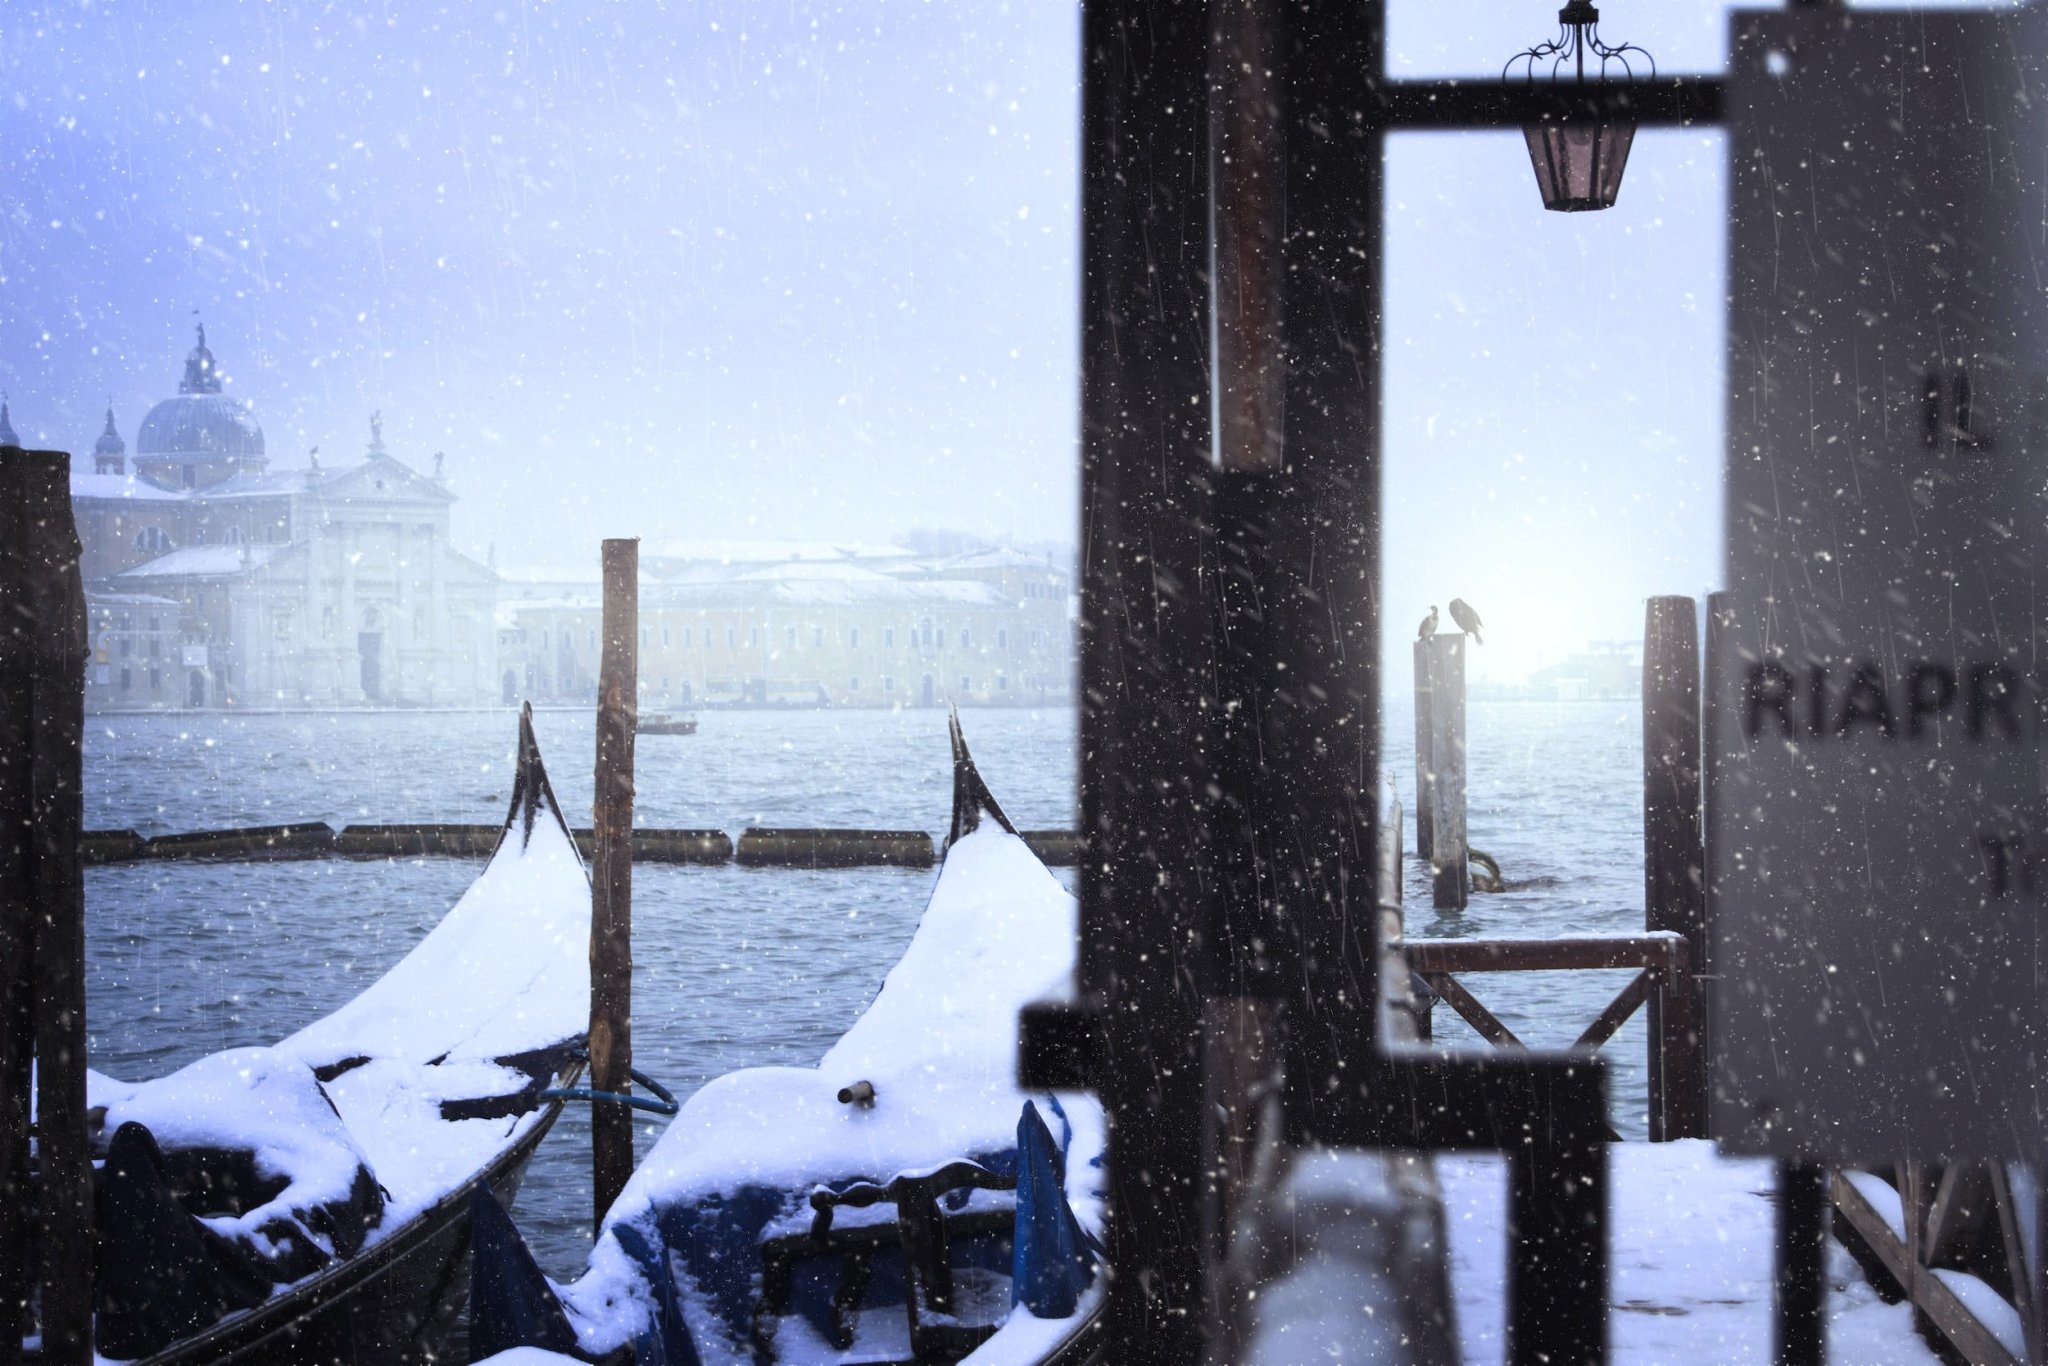 Venice in Winter - cover